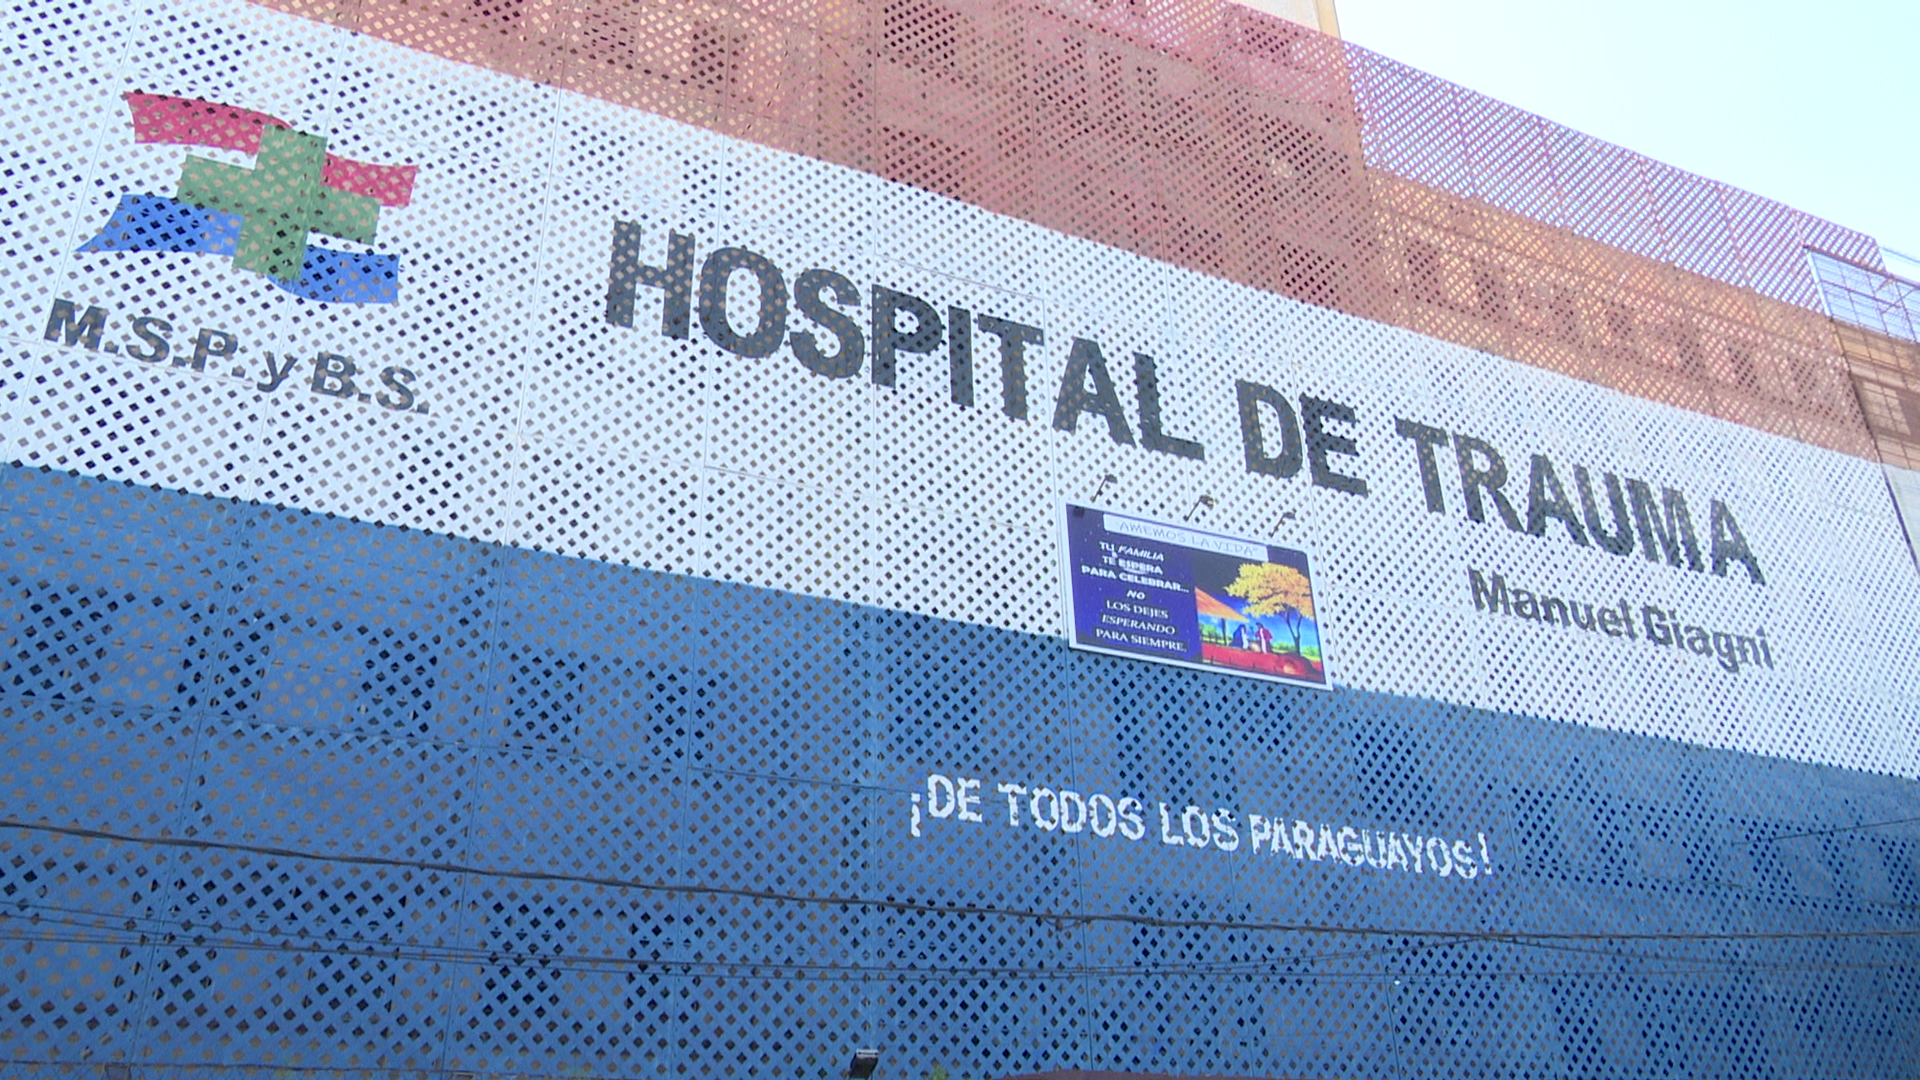 El Hospital de Trauma atendió a más de 140 personas entre la noche del 24 y madrugada del 25.